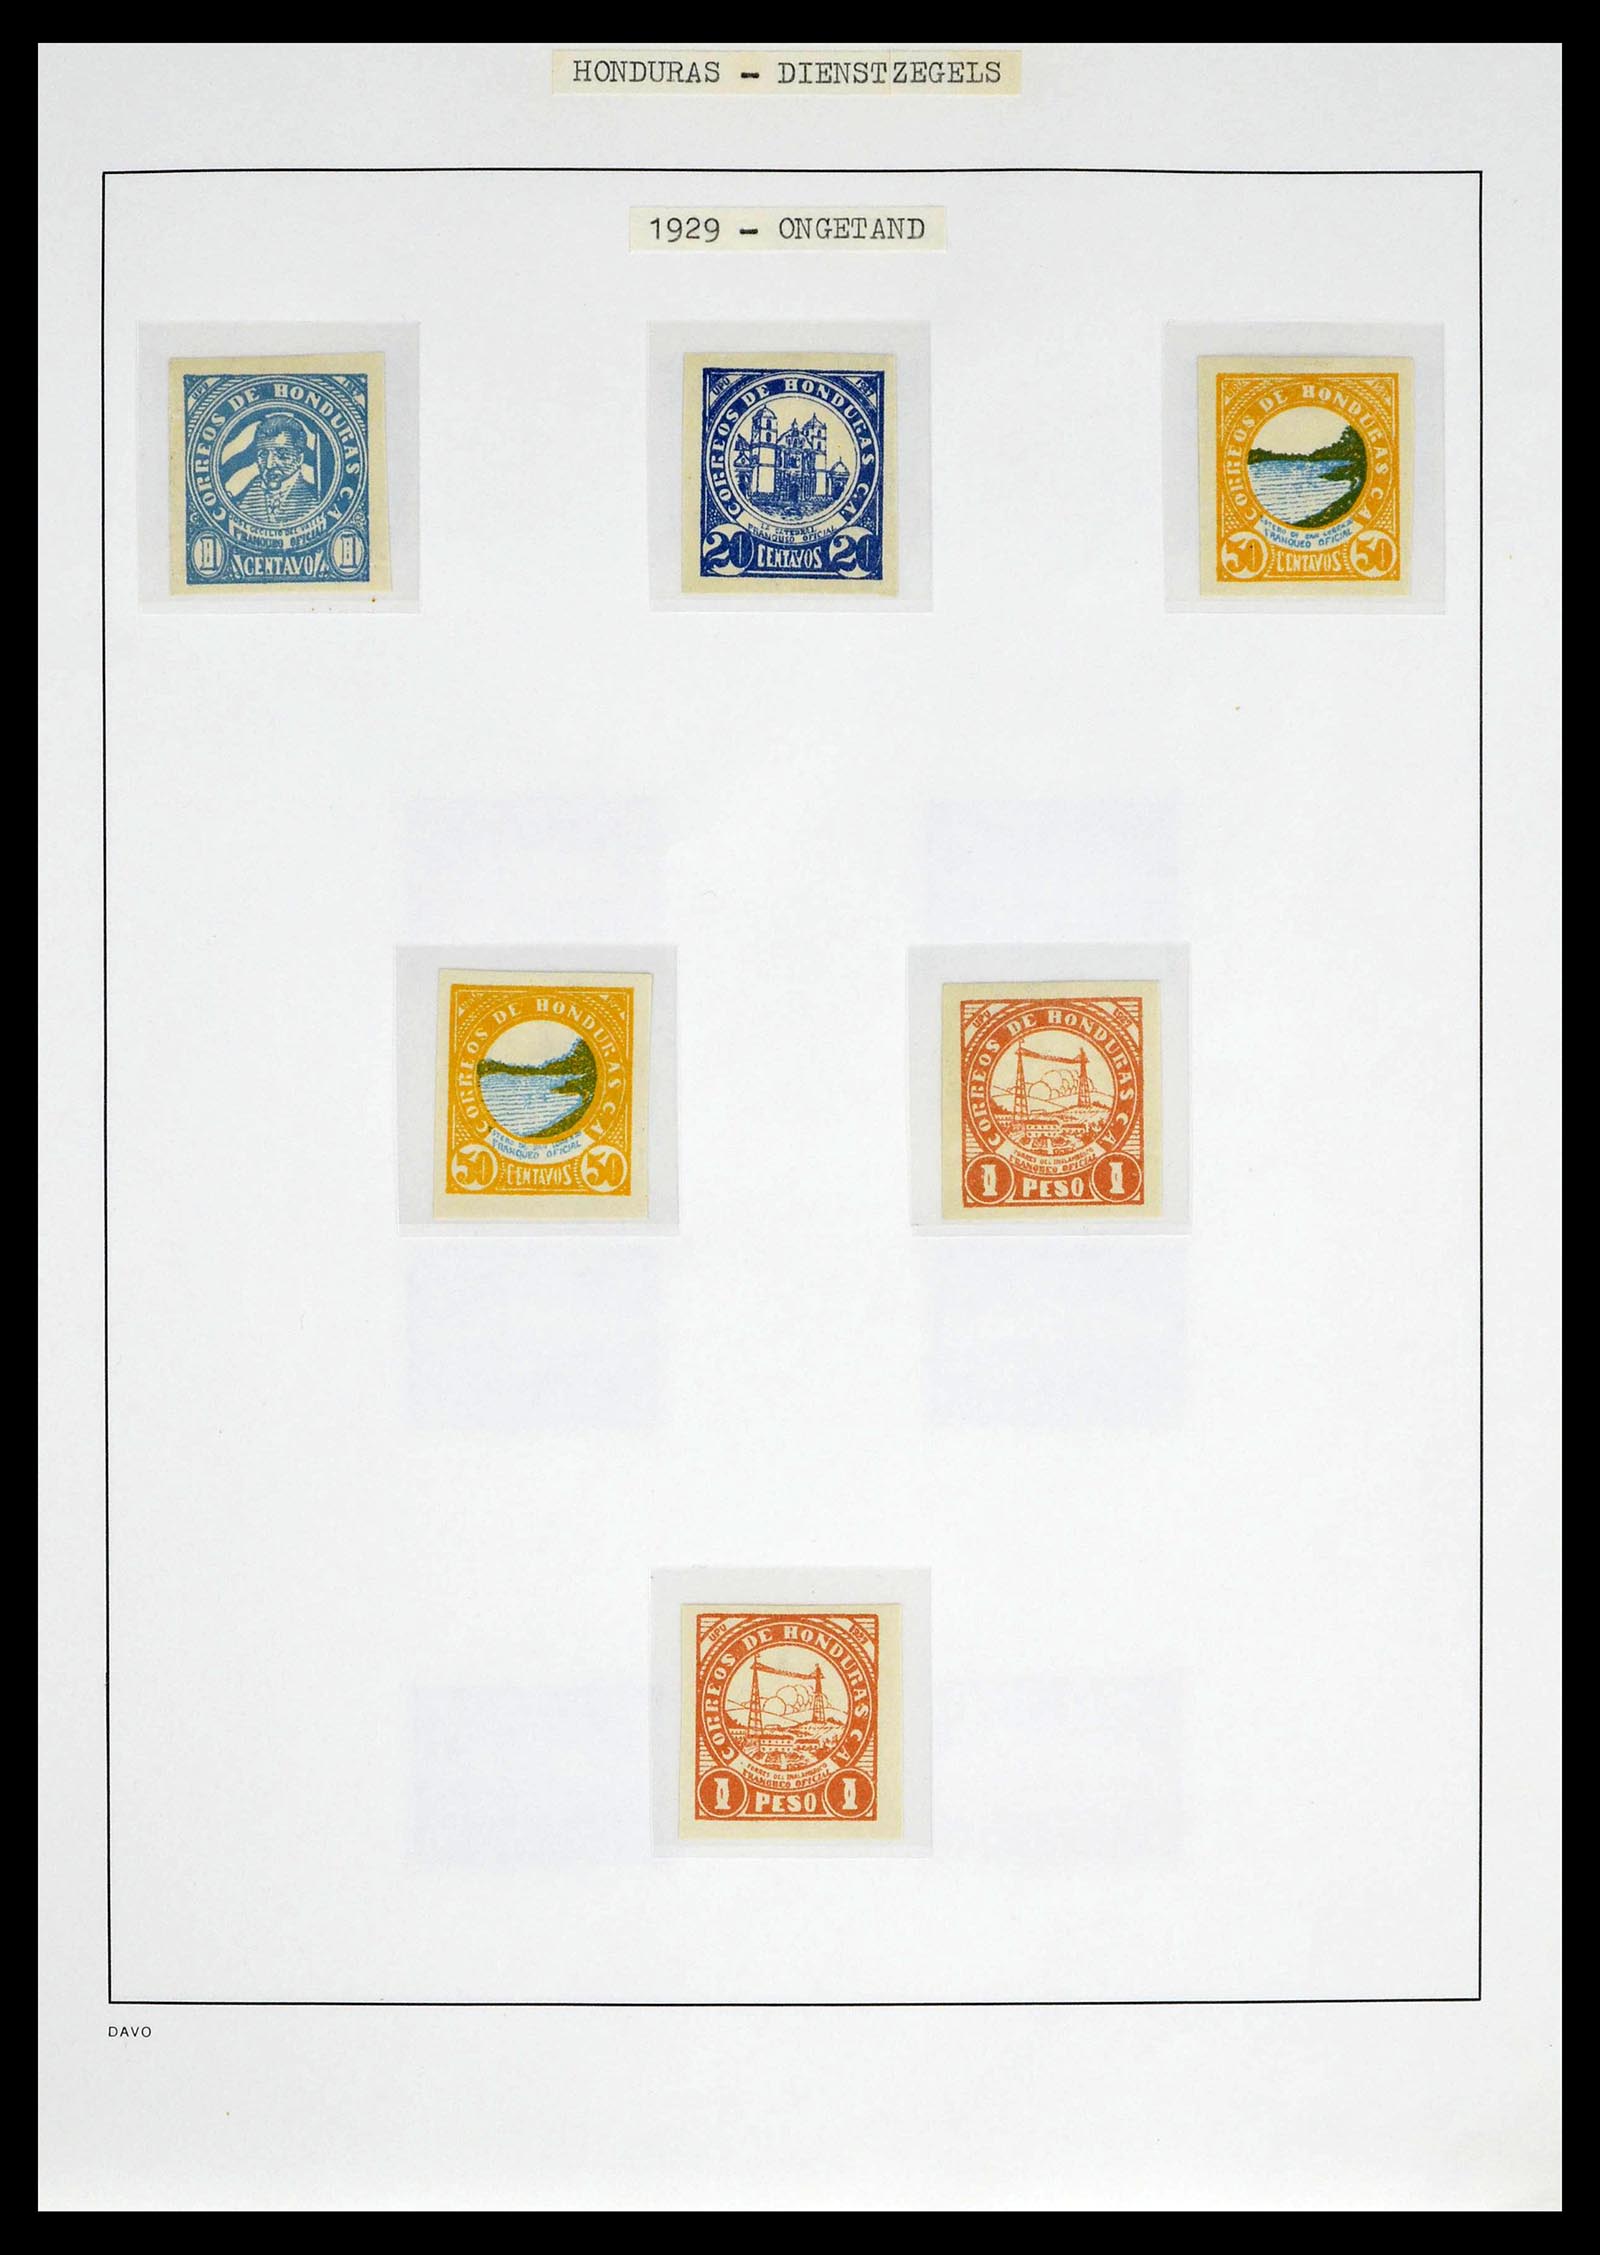 39404 0021 - Postzegelverzameling 39404 Honduras dienstzegels 1890-1974.